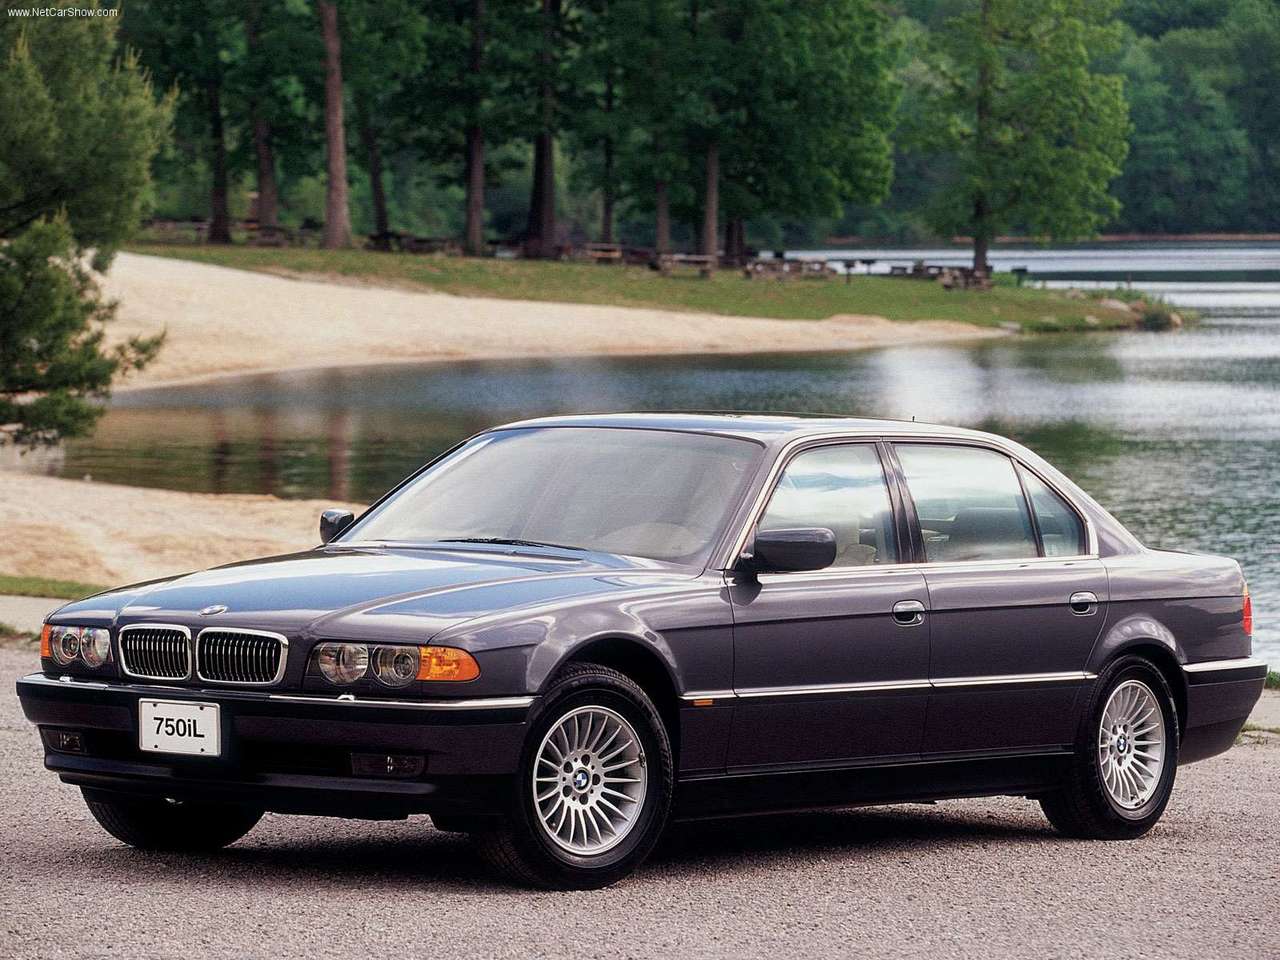 BMW - Auto twenty-first century: 2000 BMW 750iL